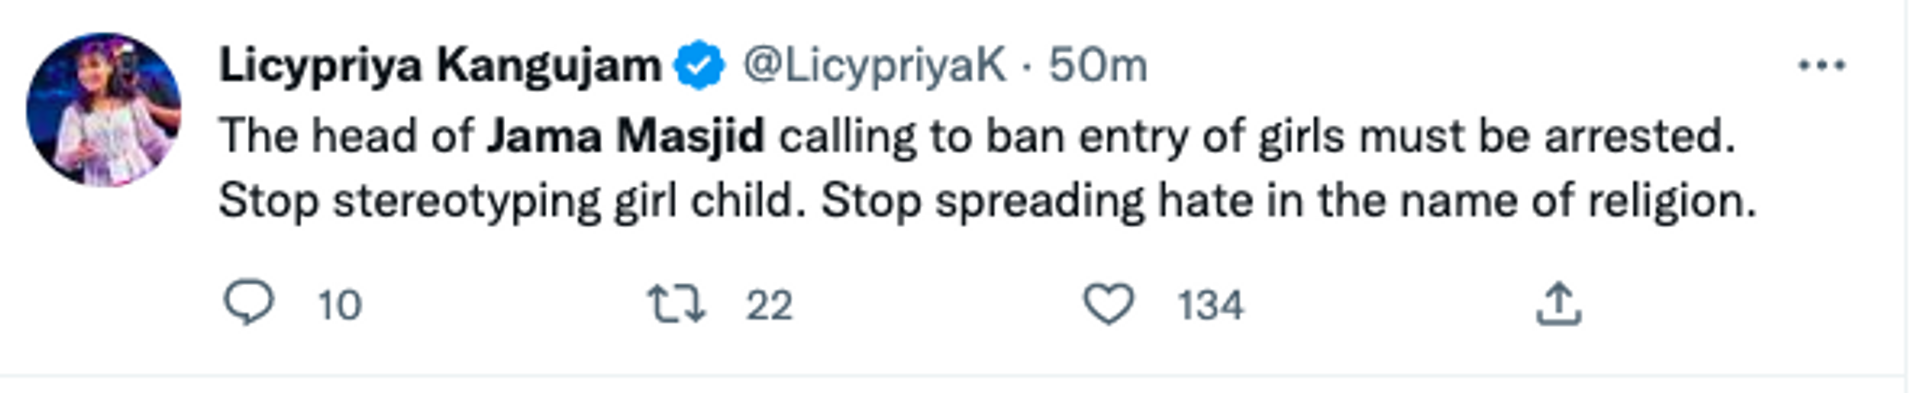 Activist Tweet On Women Entry Ban In Mosque - Sputnik International, 1920, 24.11.2022